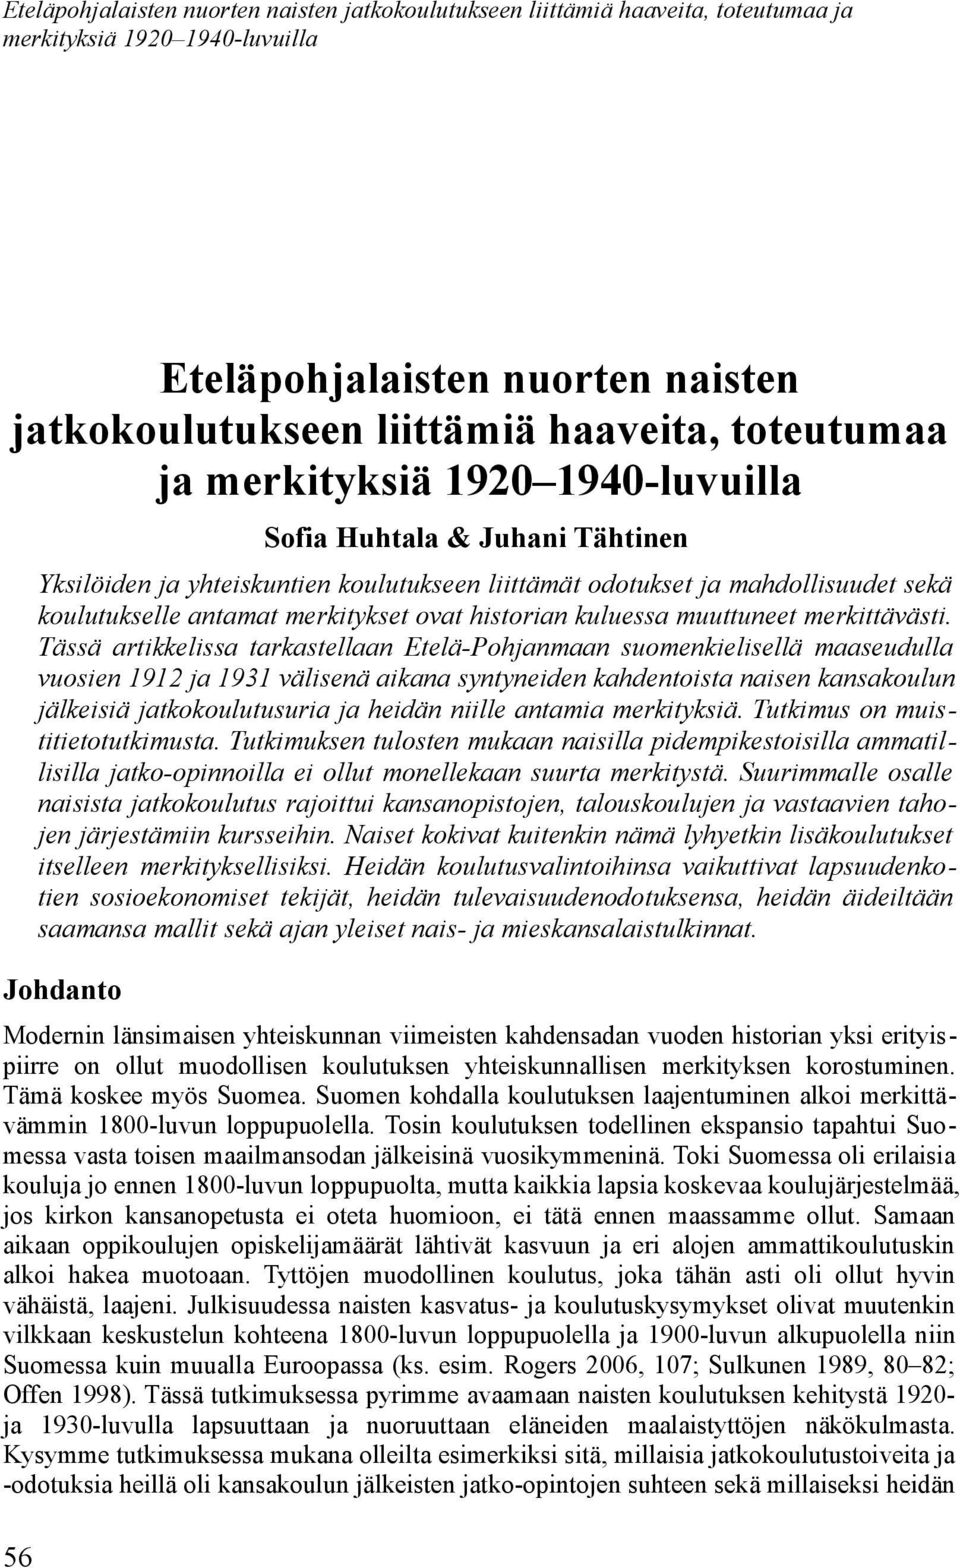 Tässä artikkelissa tarkastellaan Etelä-Pohjanmaan suomenkielisellä maaseudulla vuosien 1912 ja 1931 välisenä aikana syntyneiden kahdentoista naisen kansakoulun jälkeisiä jatkokoulutusuria ja heidän